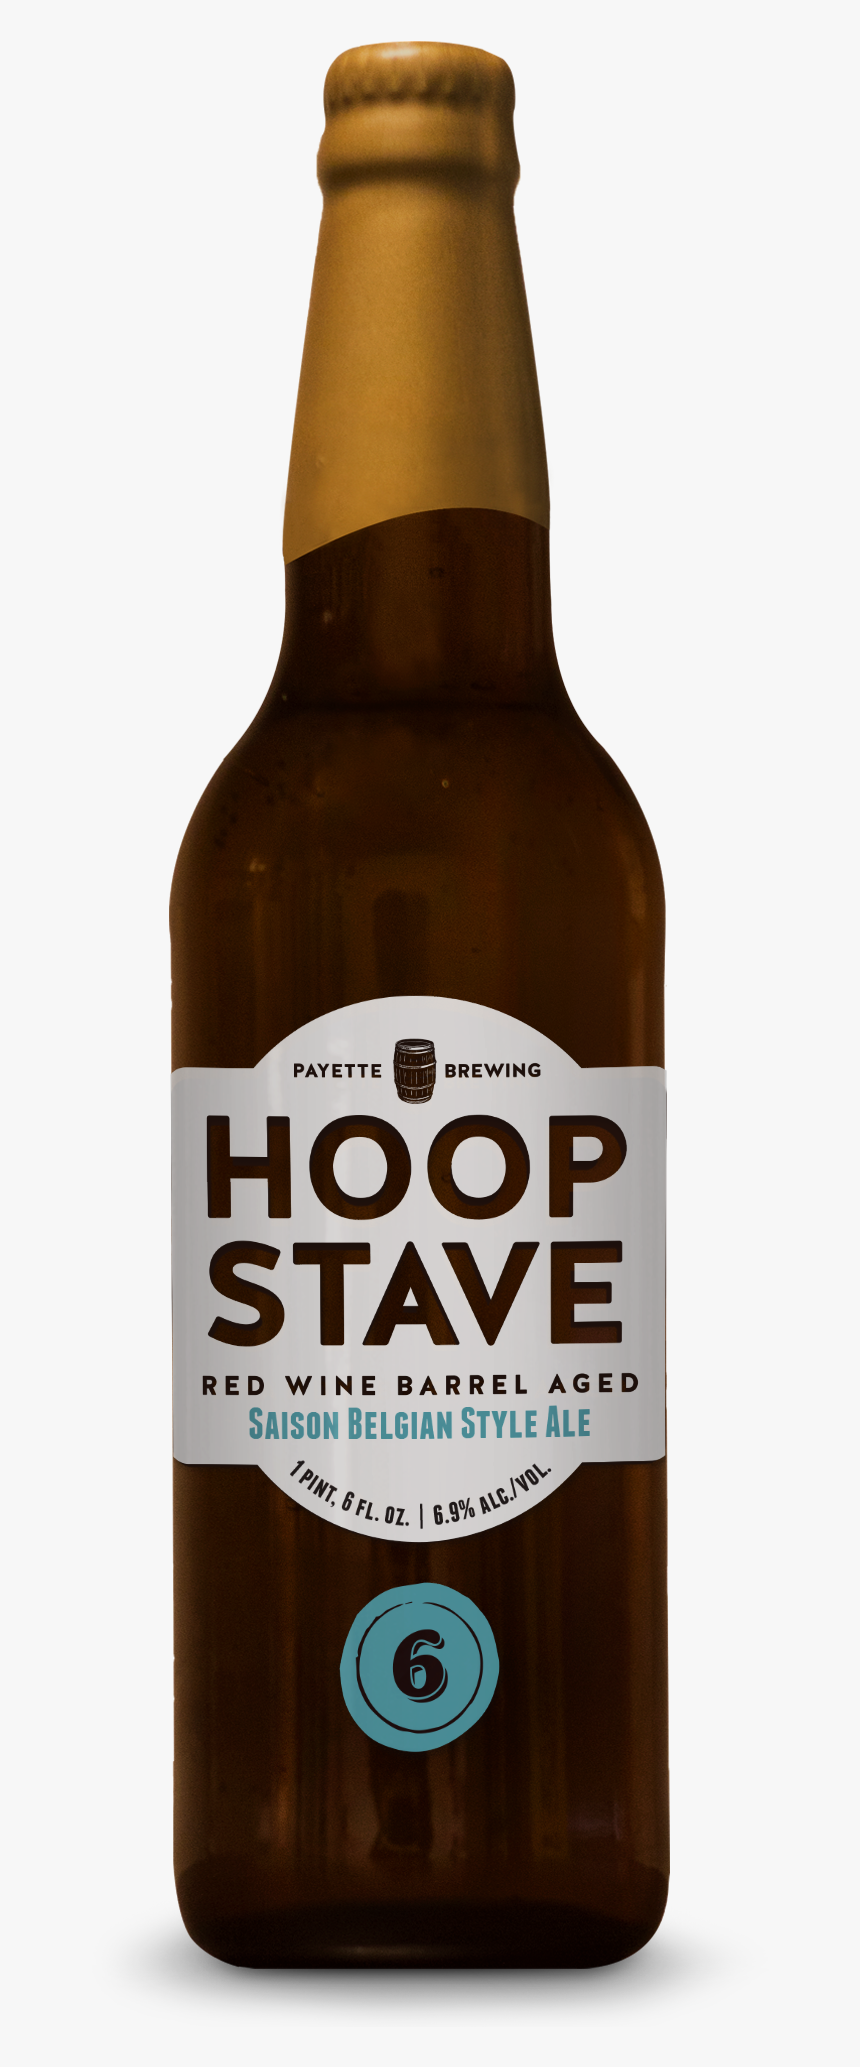 Website Beerpage Hoop&stave6, HD Png Download, Free Download